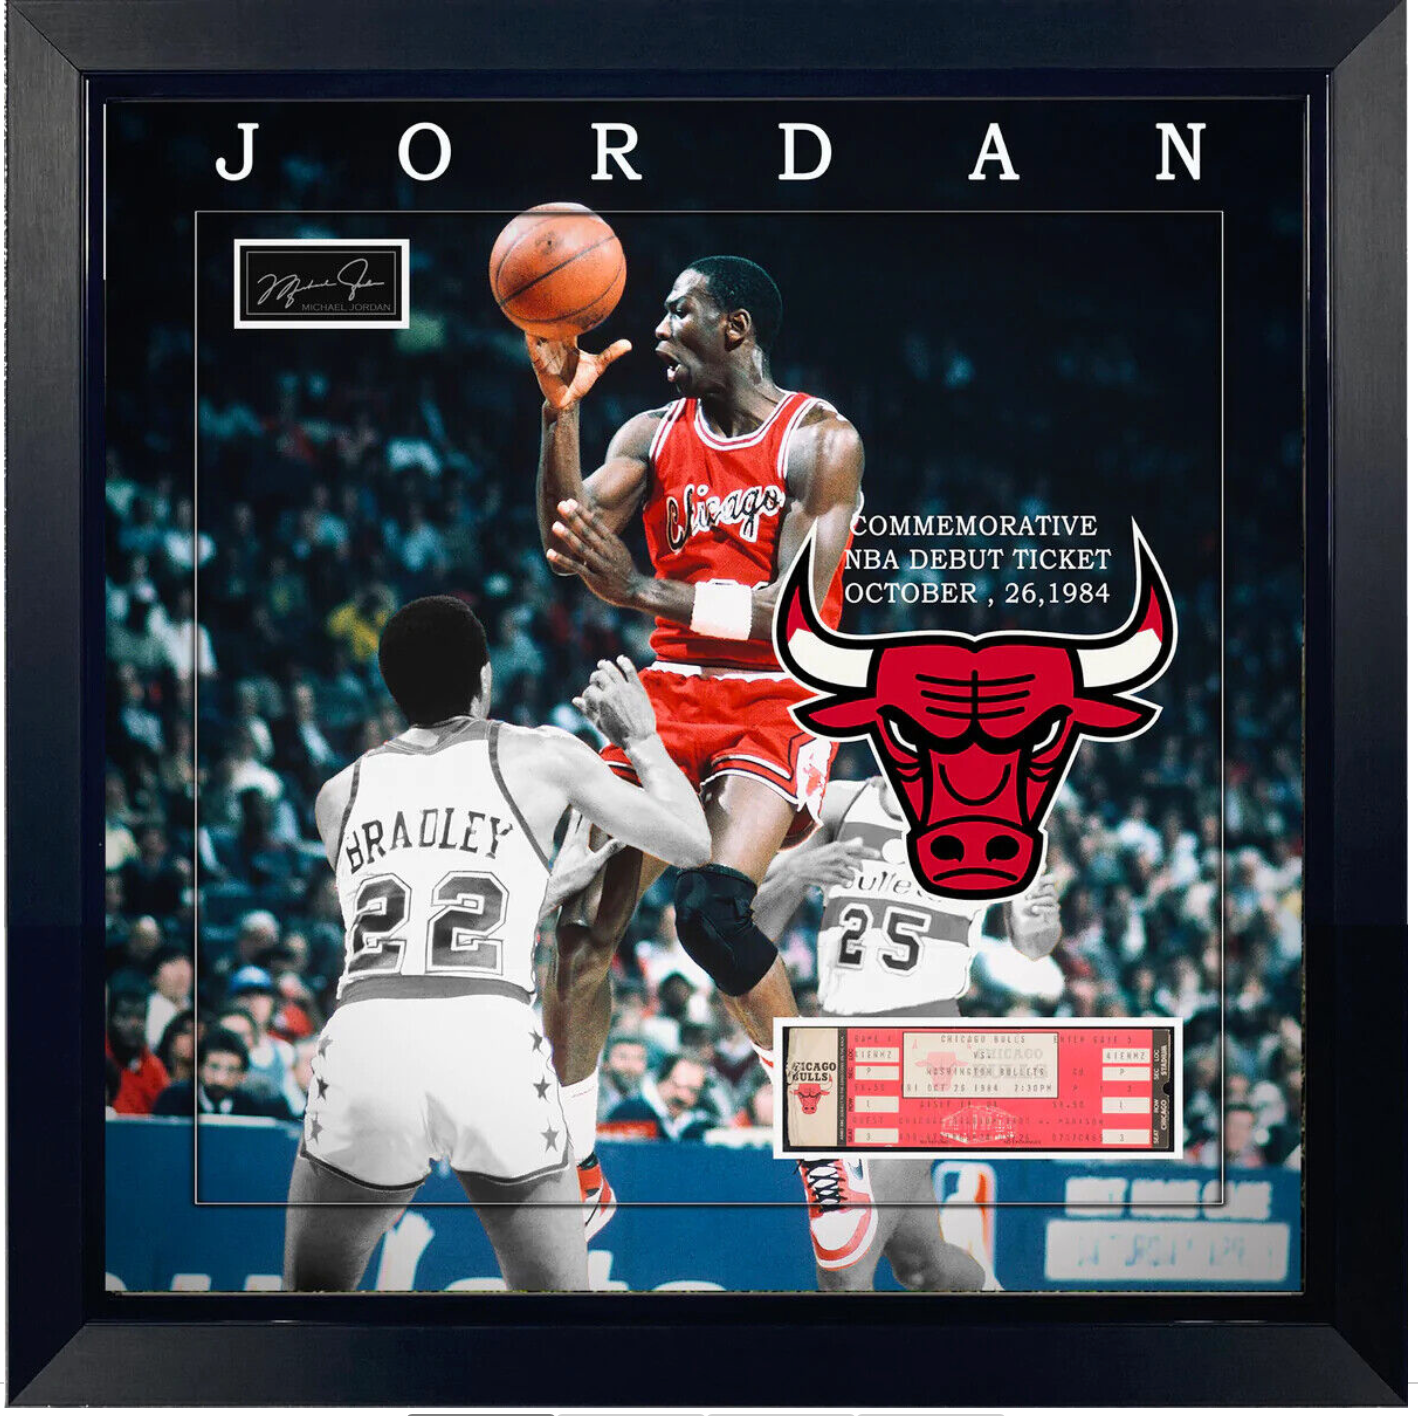 Framing the Ultimate Michael Jordan Jersey with 6 NBA Replica